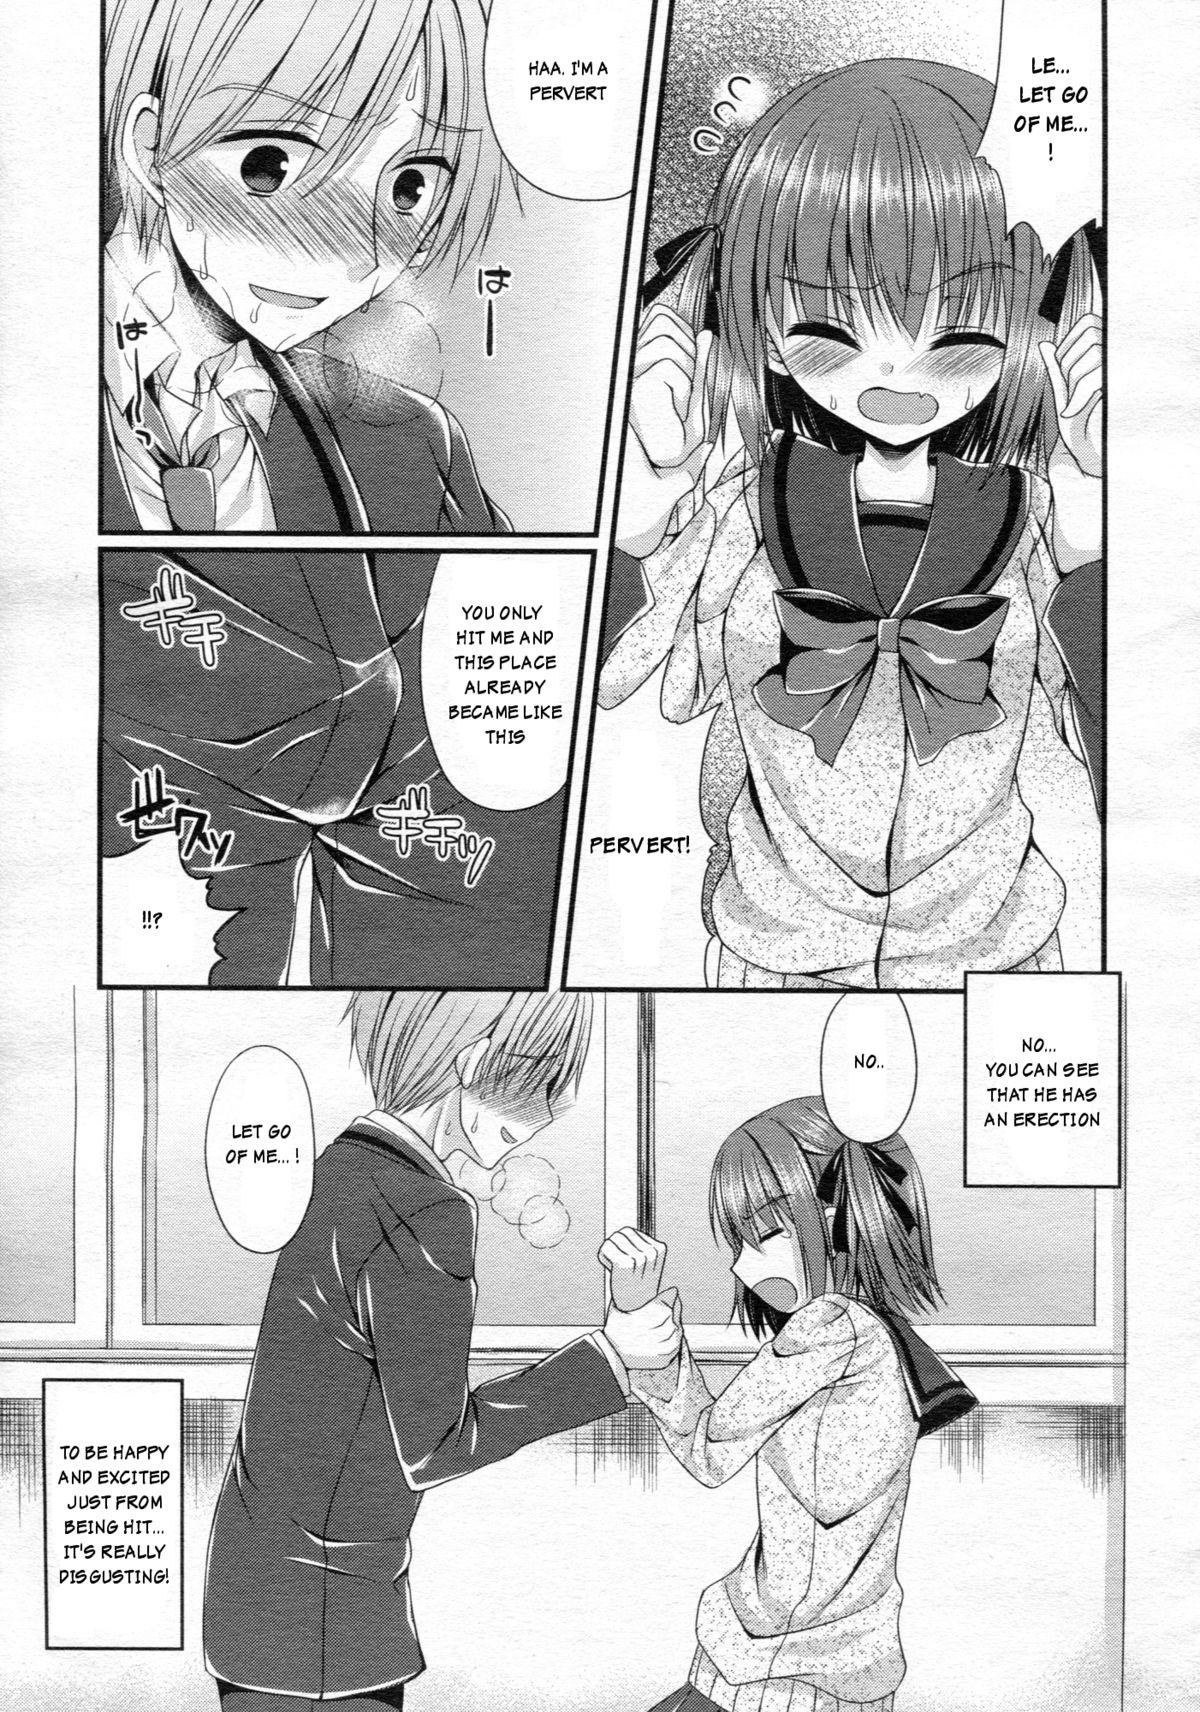 She Ijimekko Switching | Bully switching Girlfriends - Page 7